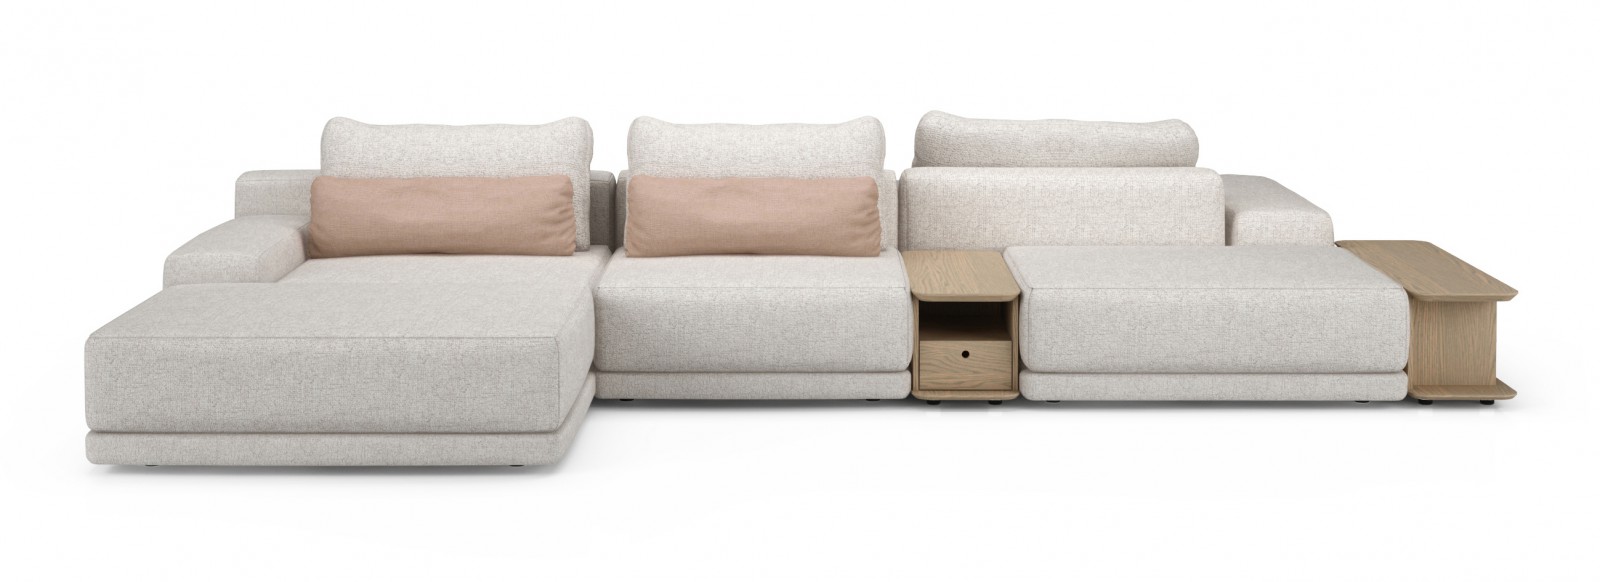 176" Modular Sofa